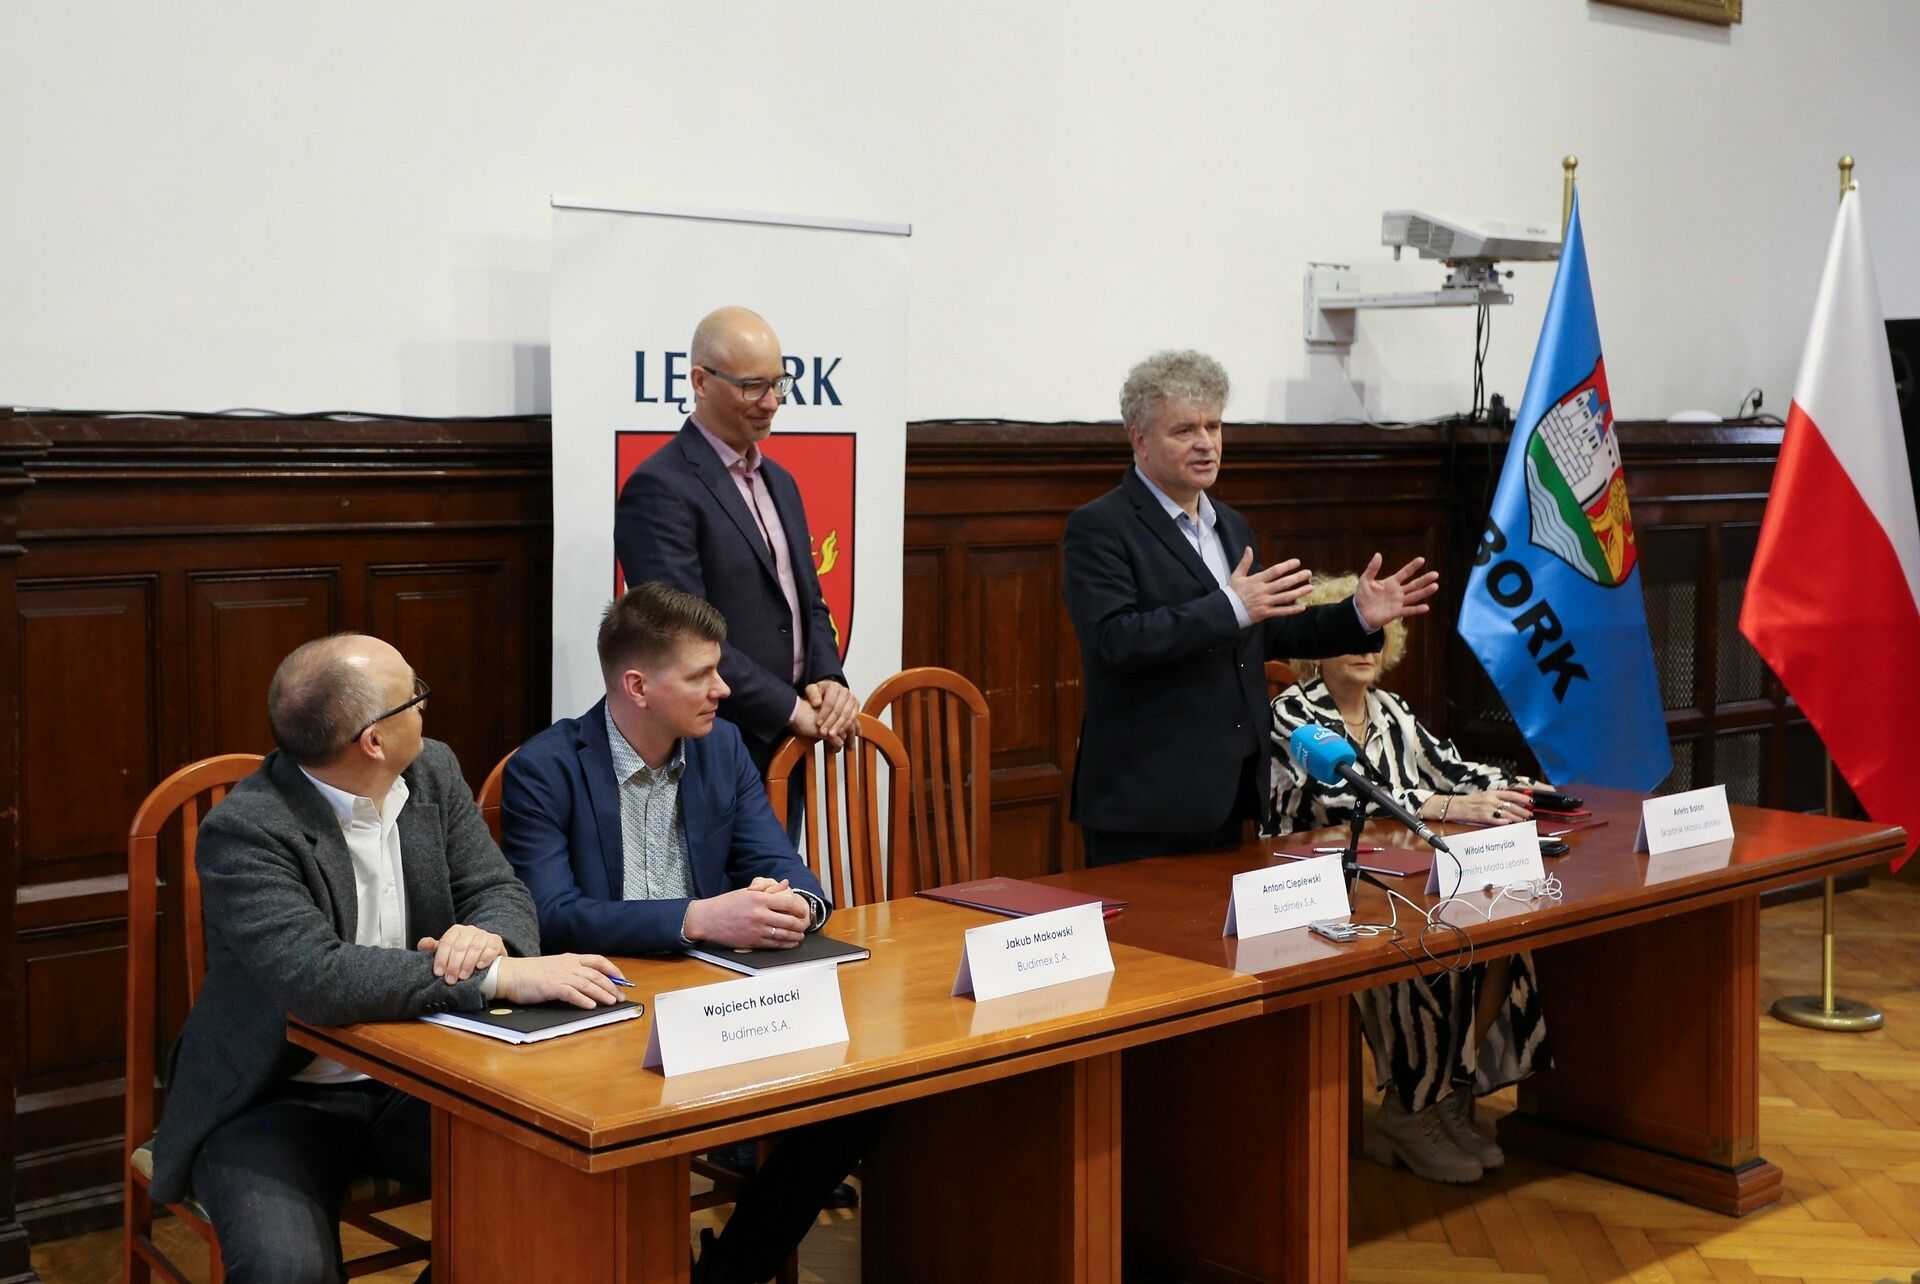 Podpisano umowę na budowę nowej drogi w Lęborku: